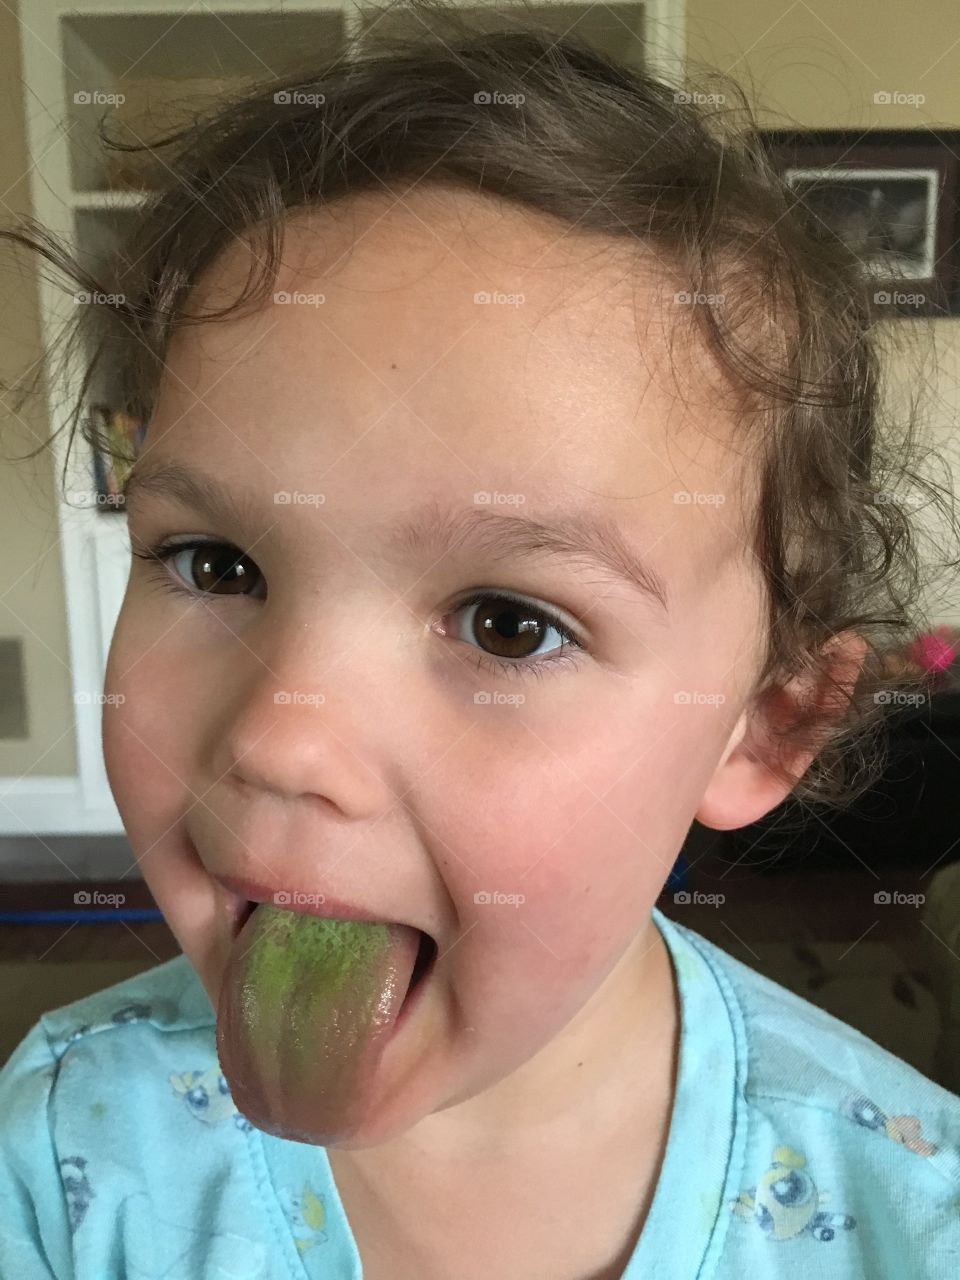 Green tongue